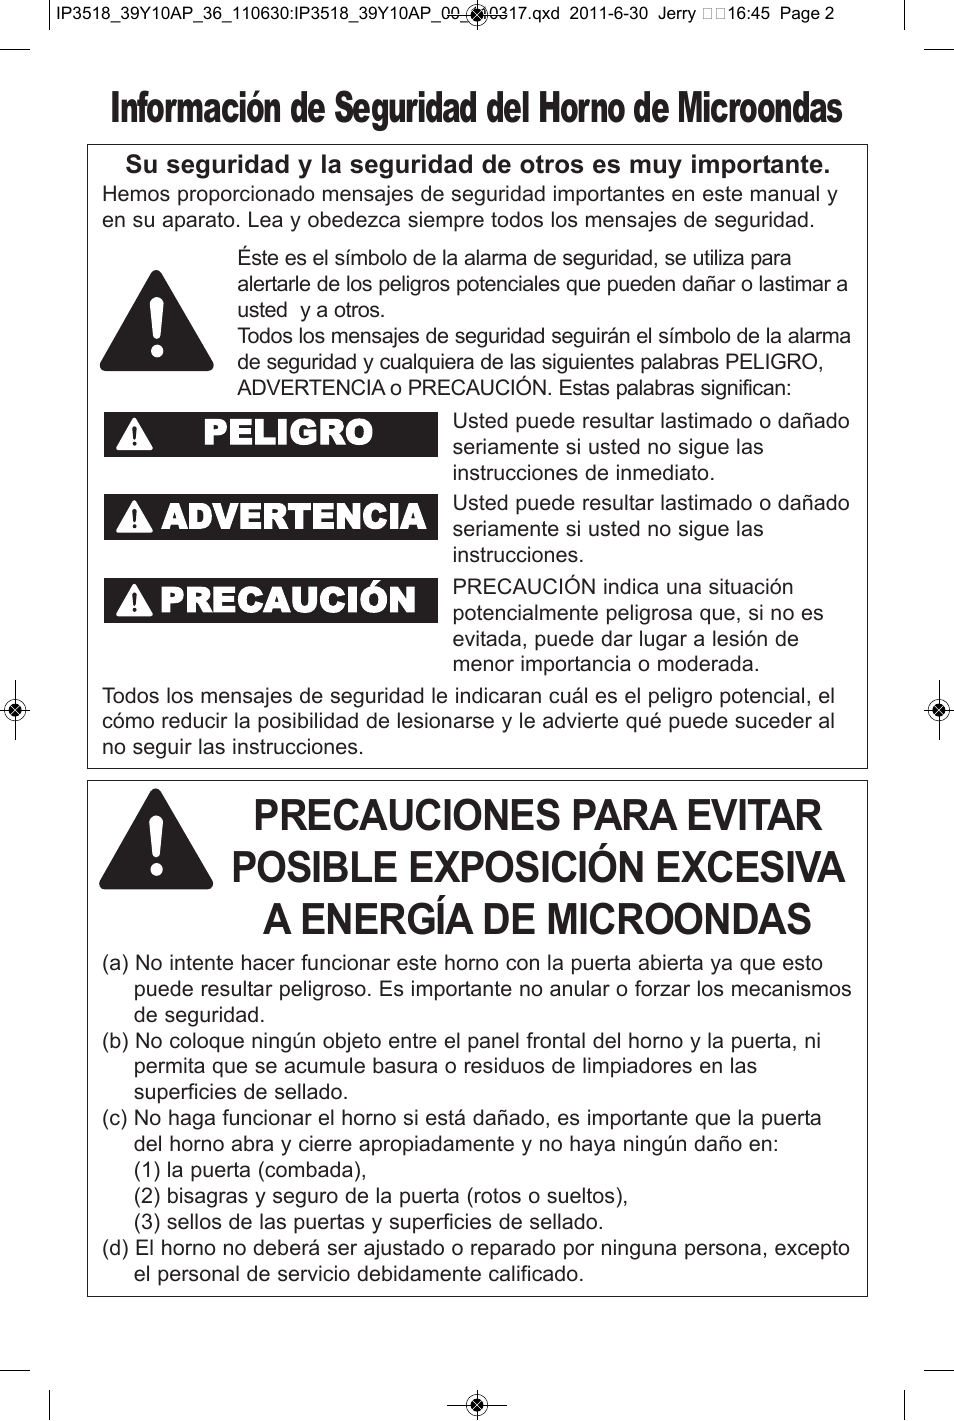 Información de seguridad del horno de microondas, Peligro advertencia